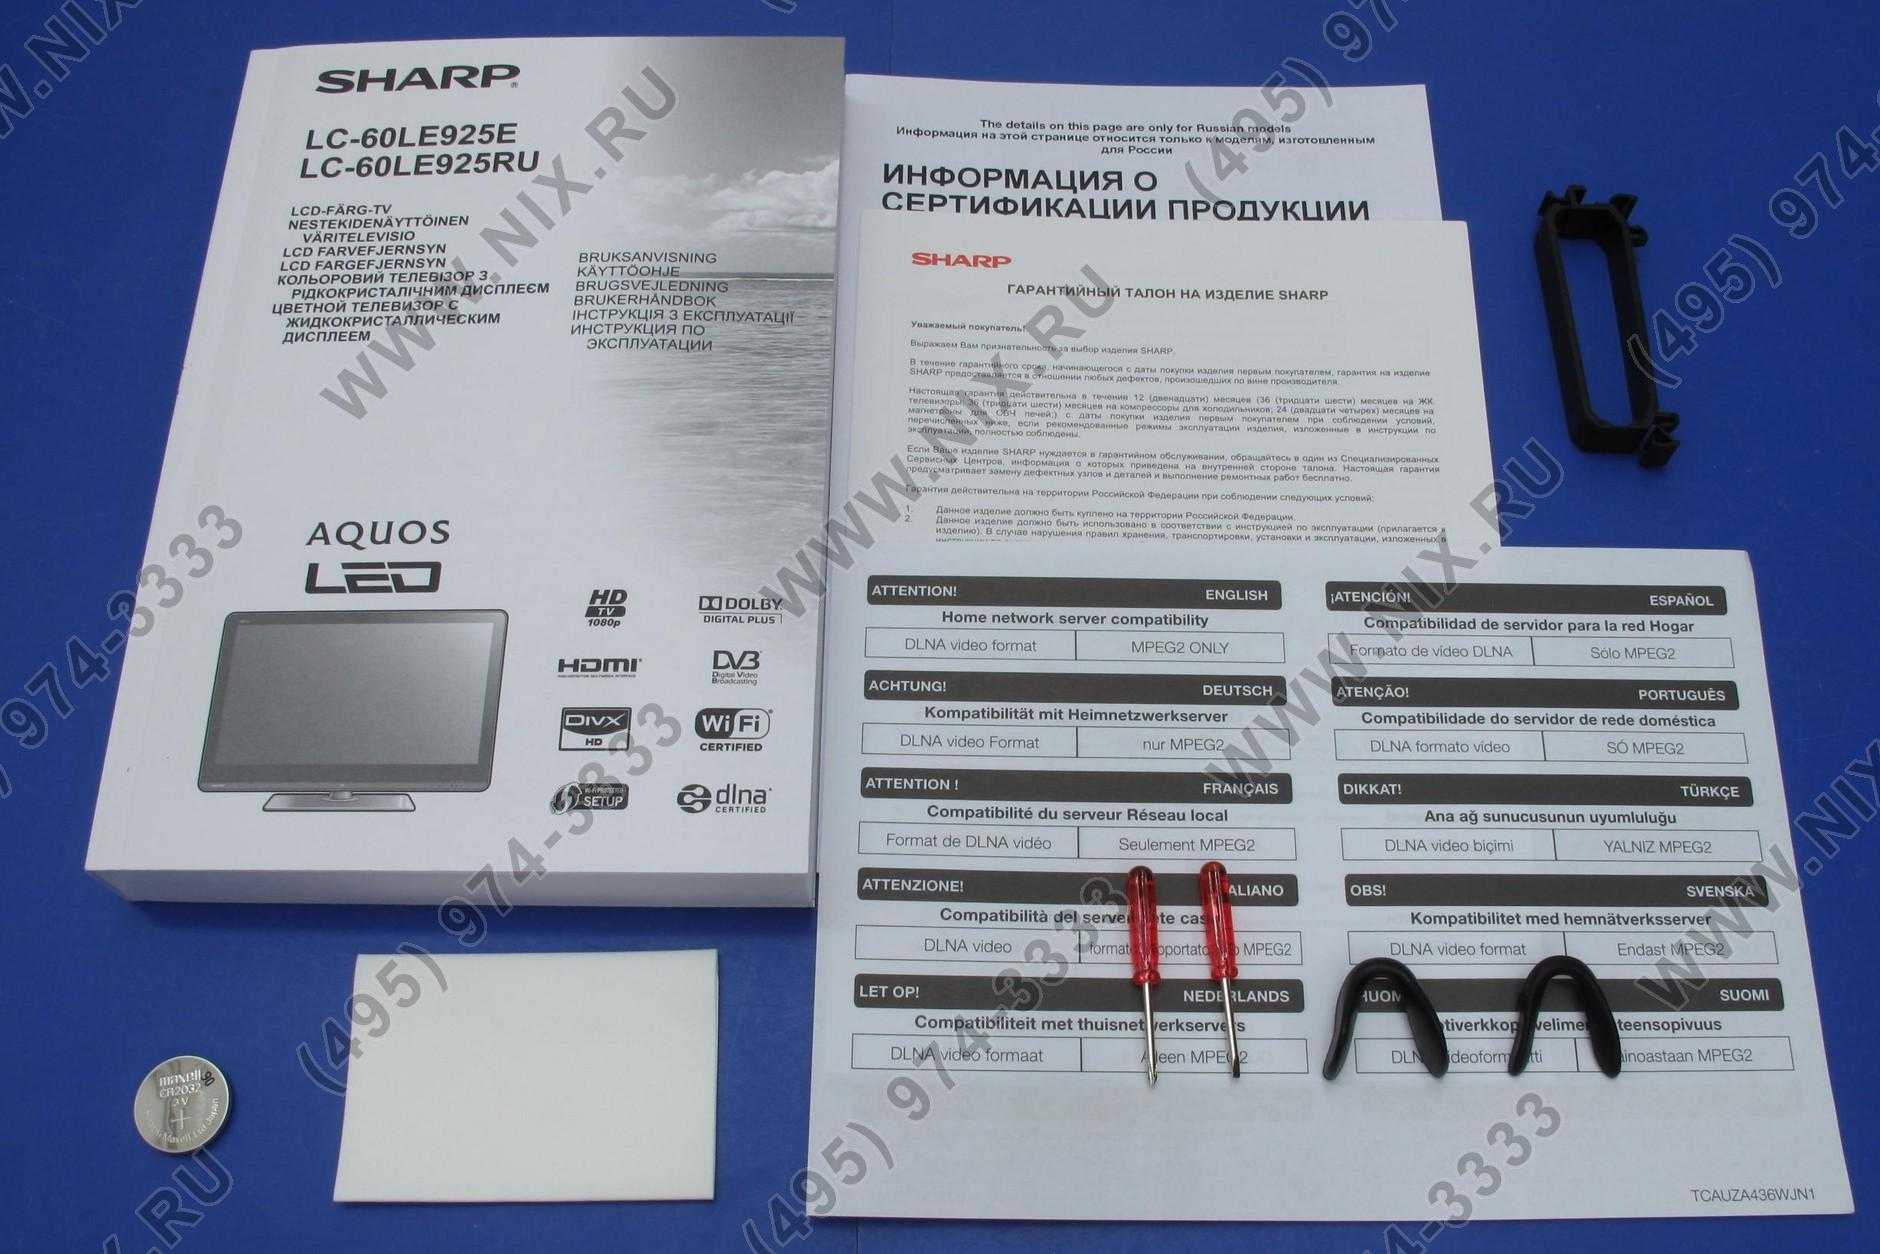 Sharp lc-60le925 - купить , скидки, цена, отзывы, обзор, характеристики - телевизоры